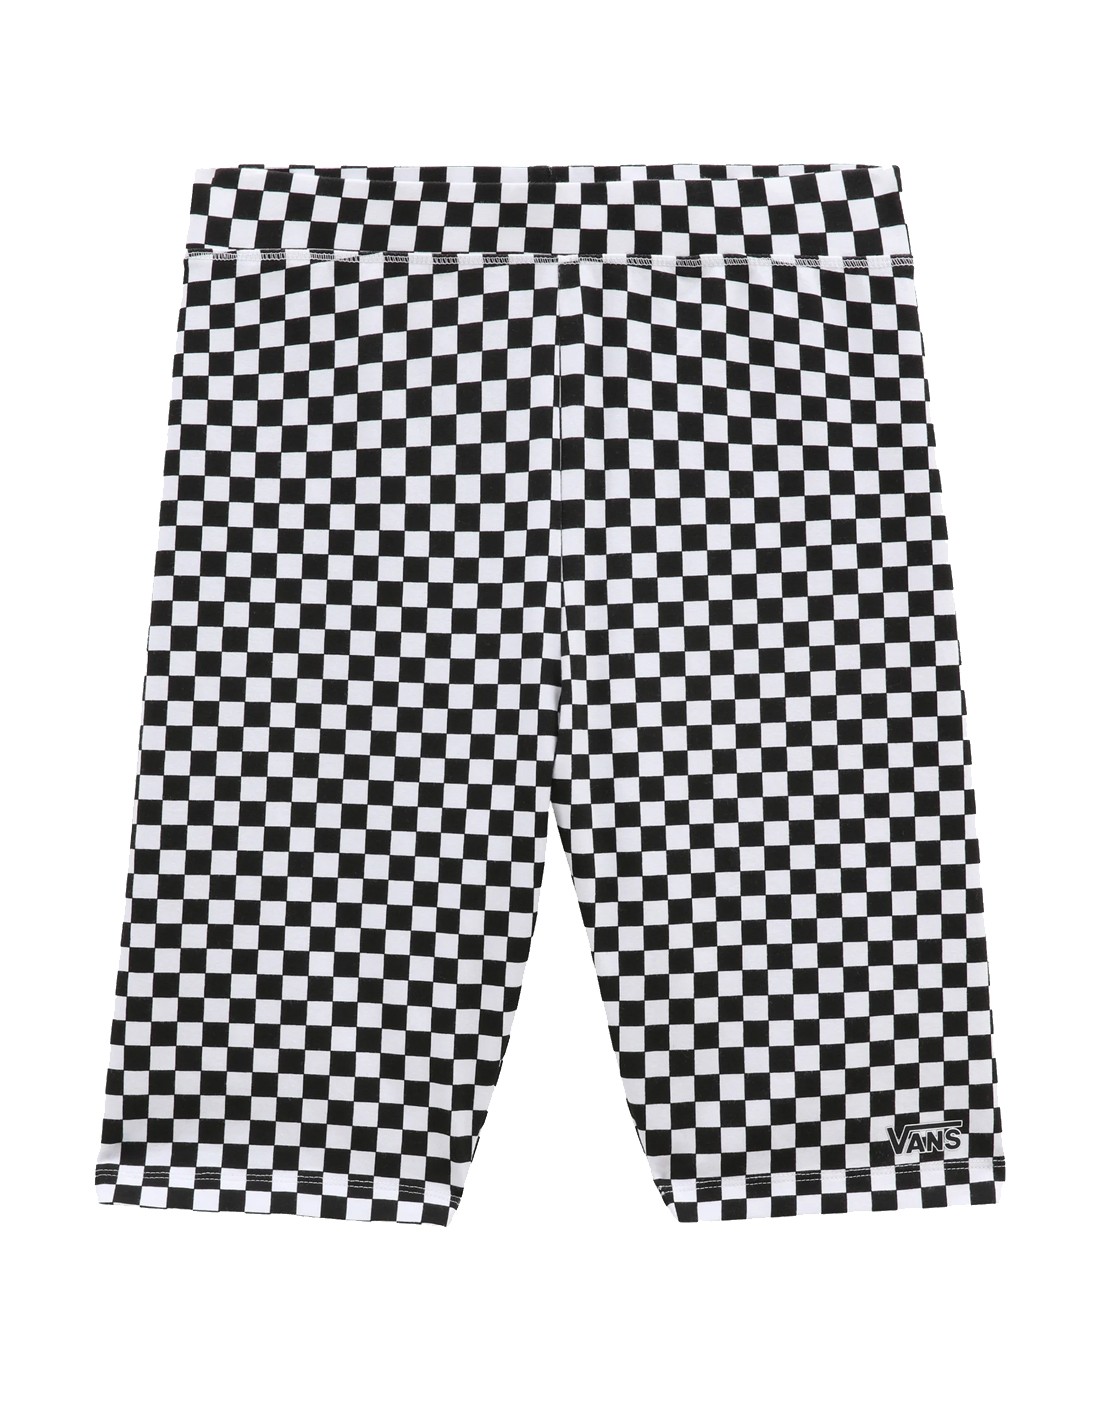 VANS Flying V Print - Black/White Checkerboard - Legging Short Women